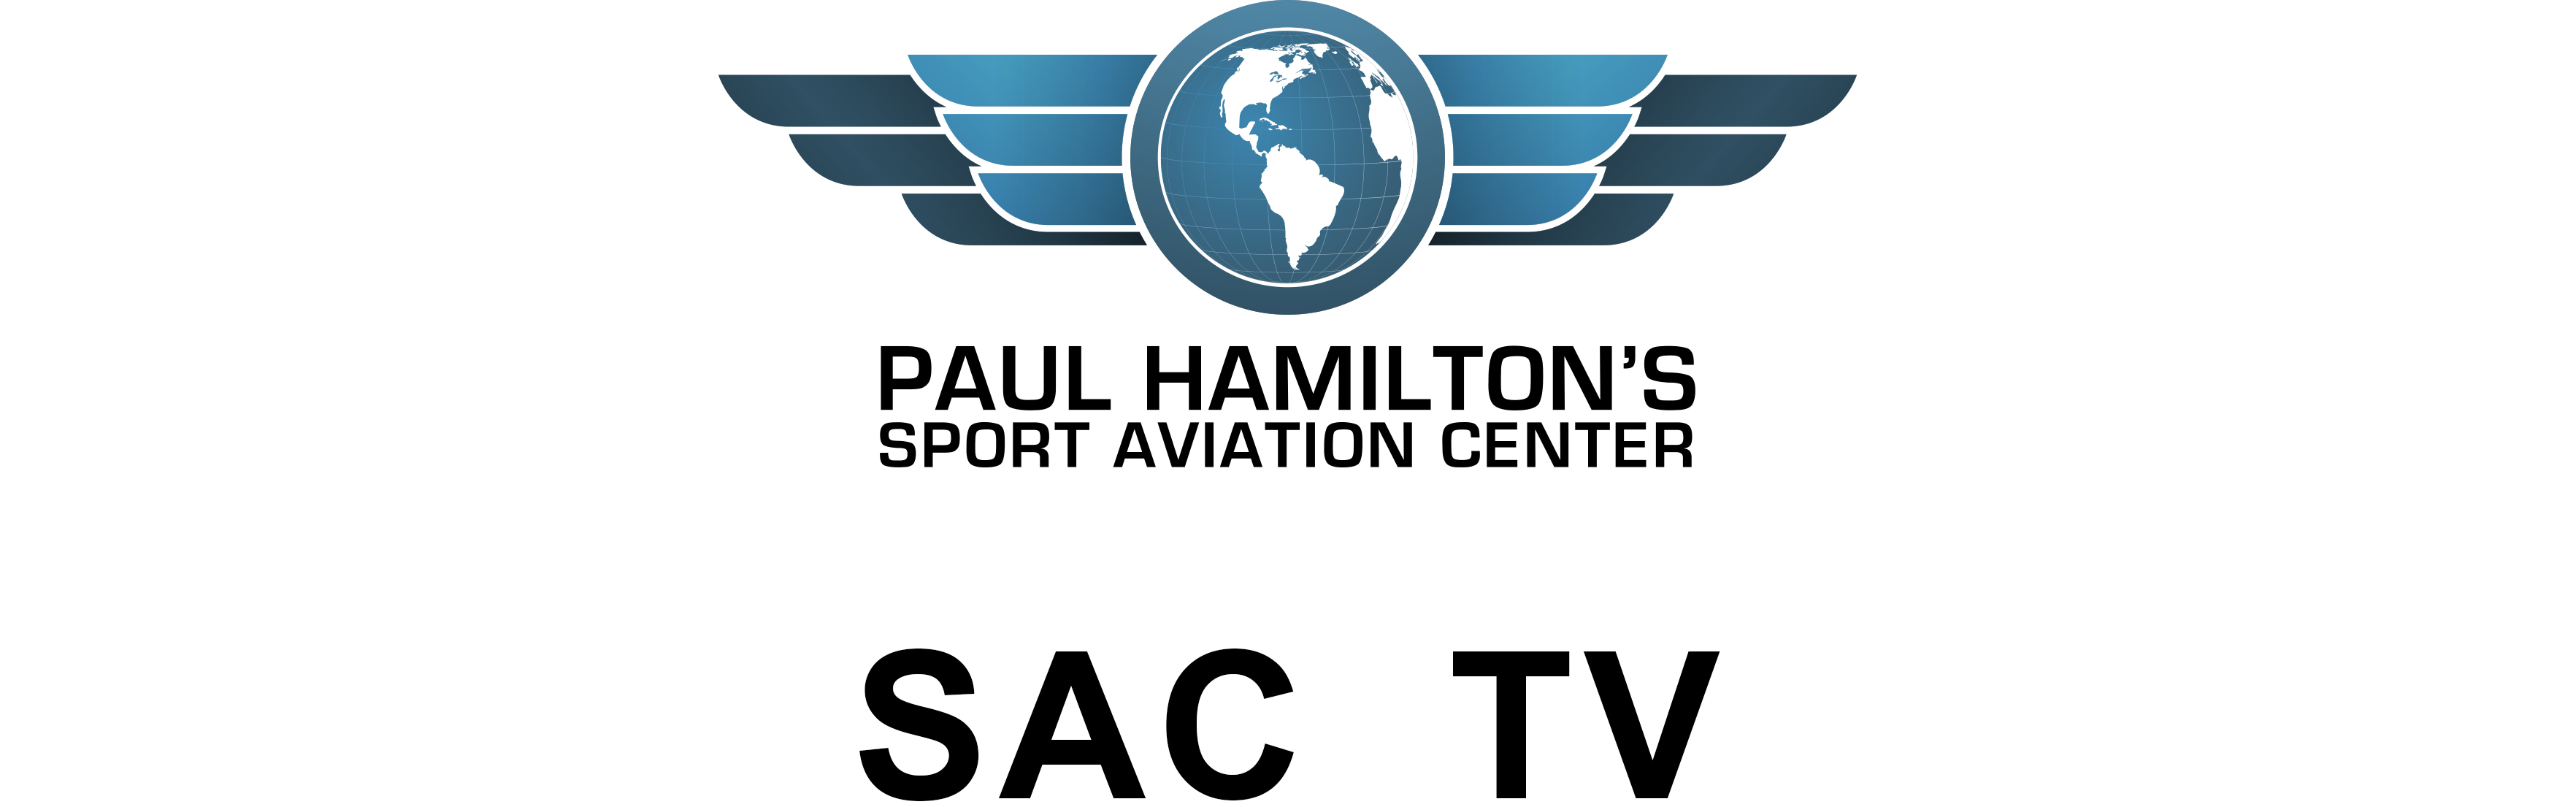 Sport Aviation Center TV | Paul Hamilton's Sport Aviation Center LLC